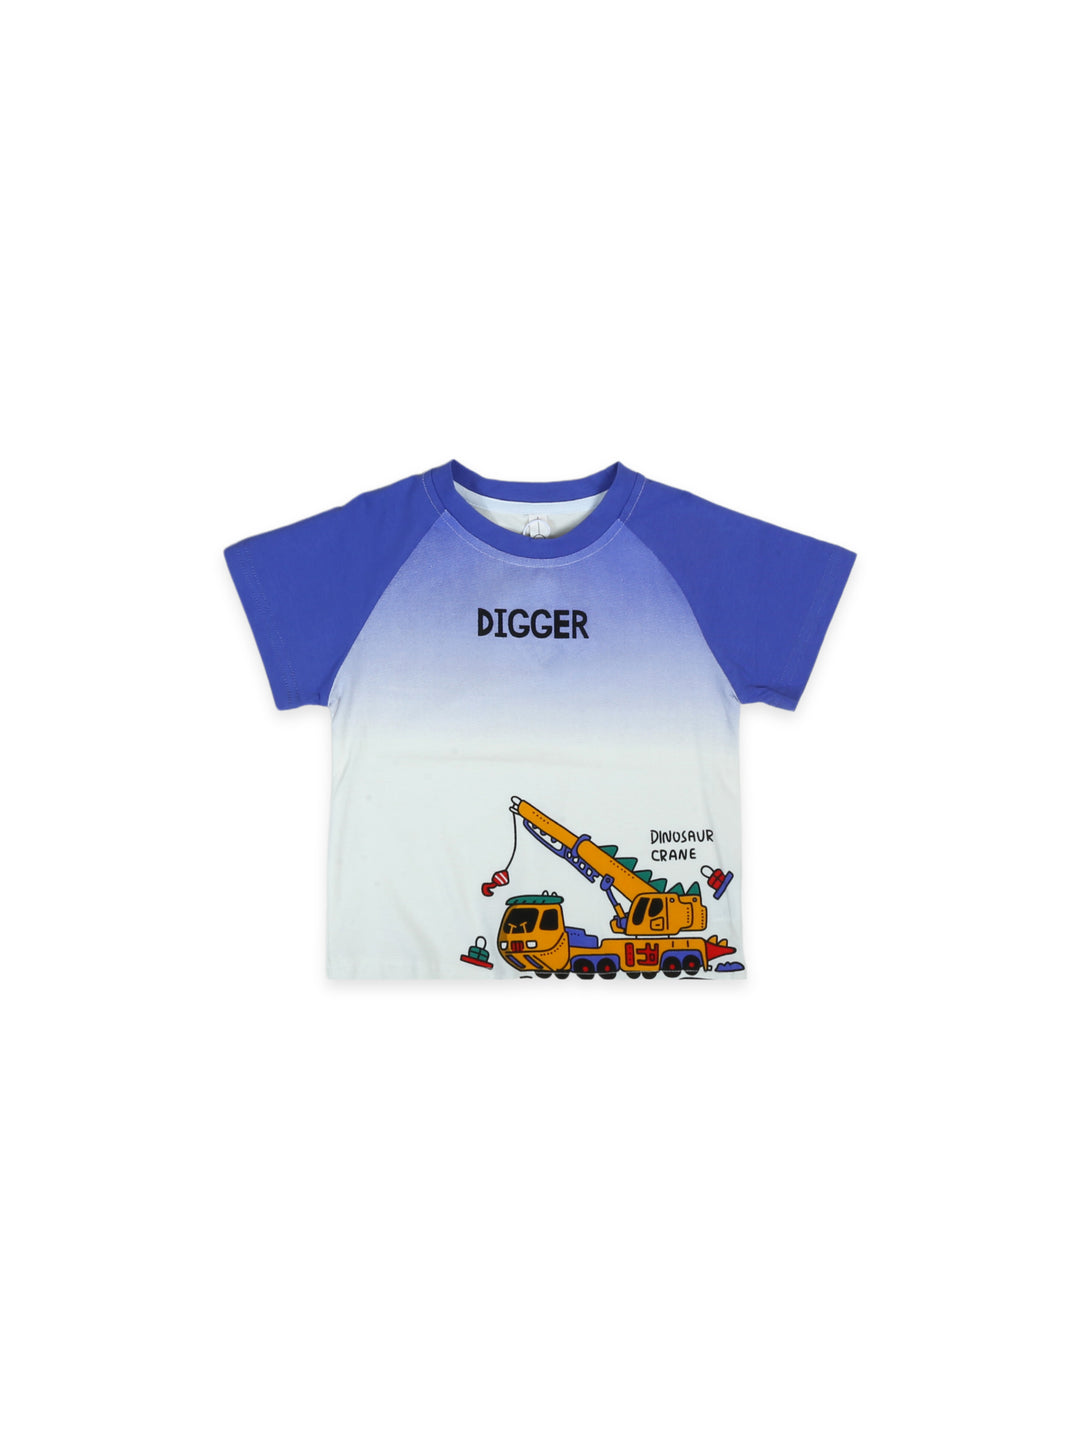 Imp Boys H/S T-Shirt #T19303-24S (S-24)